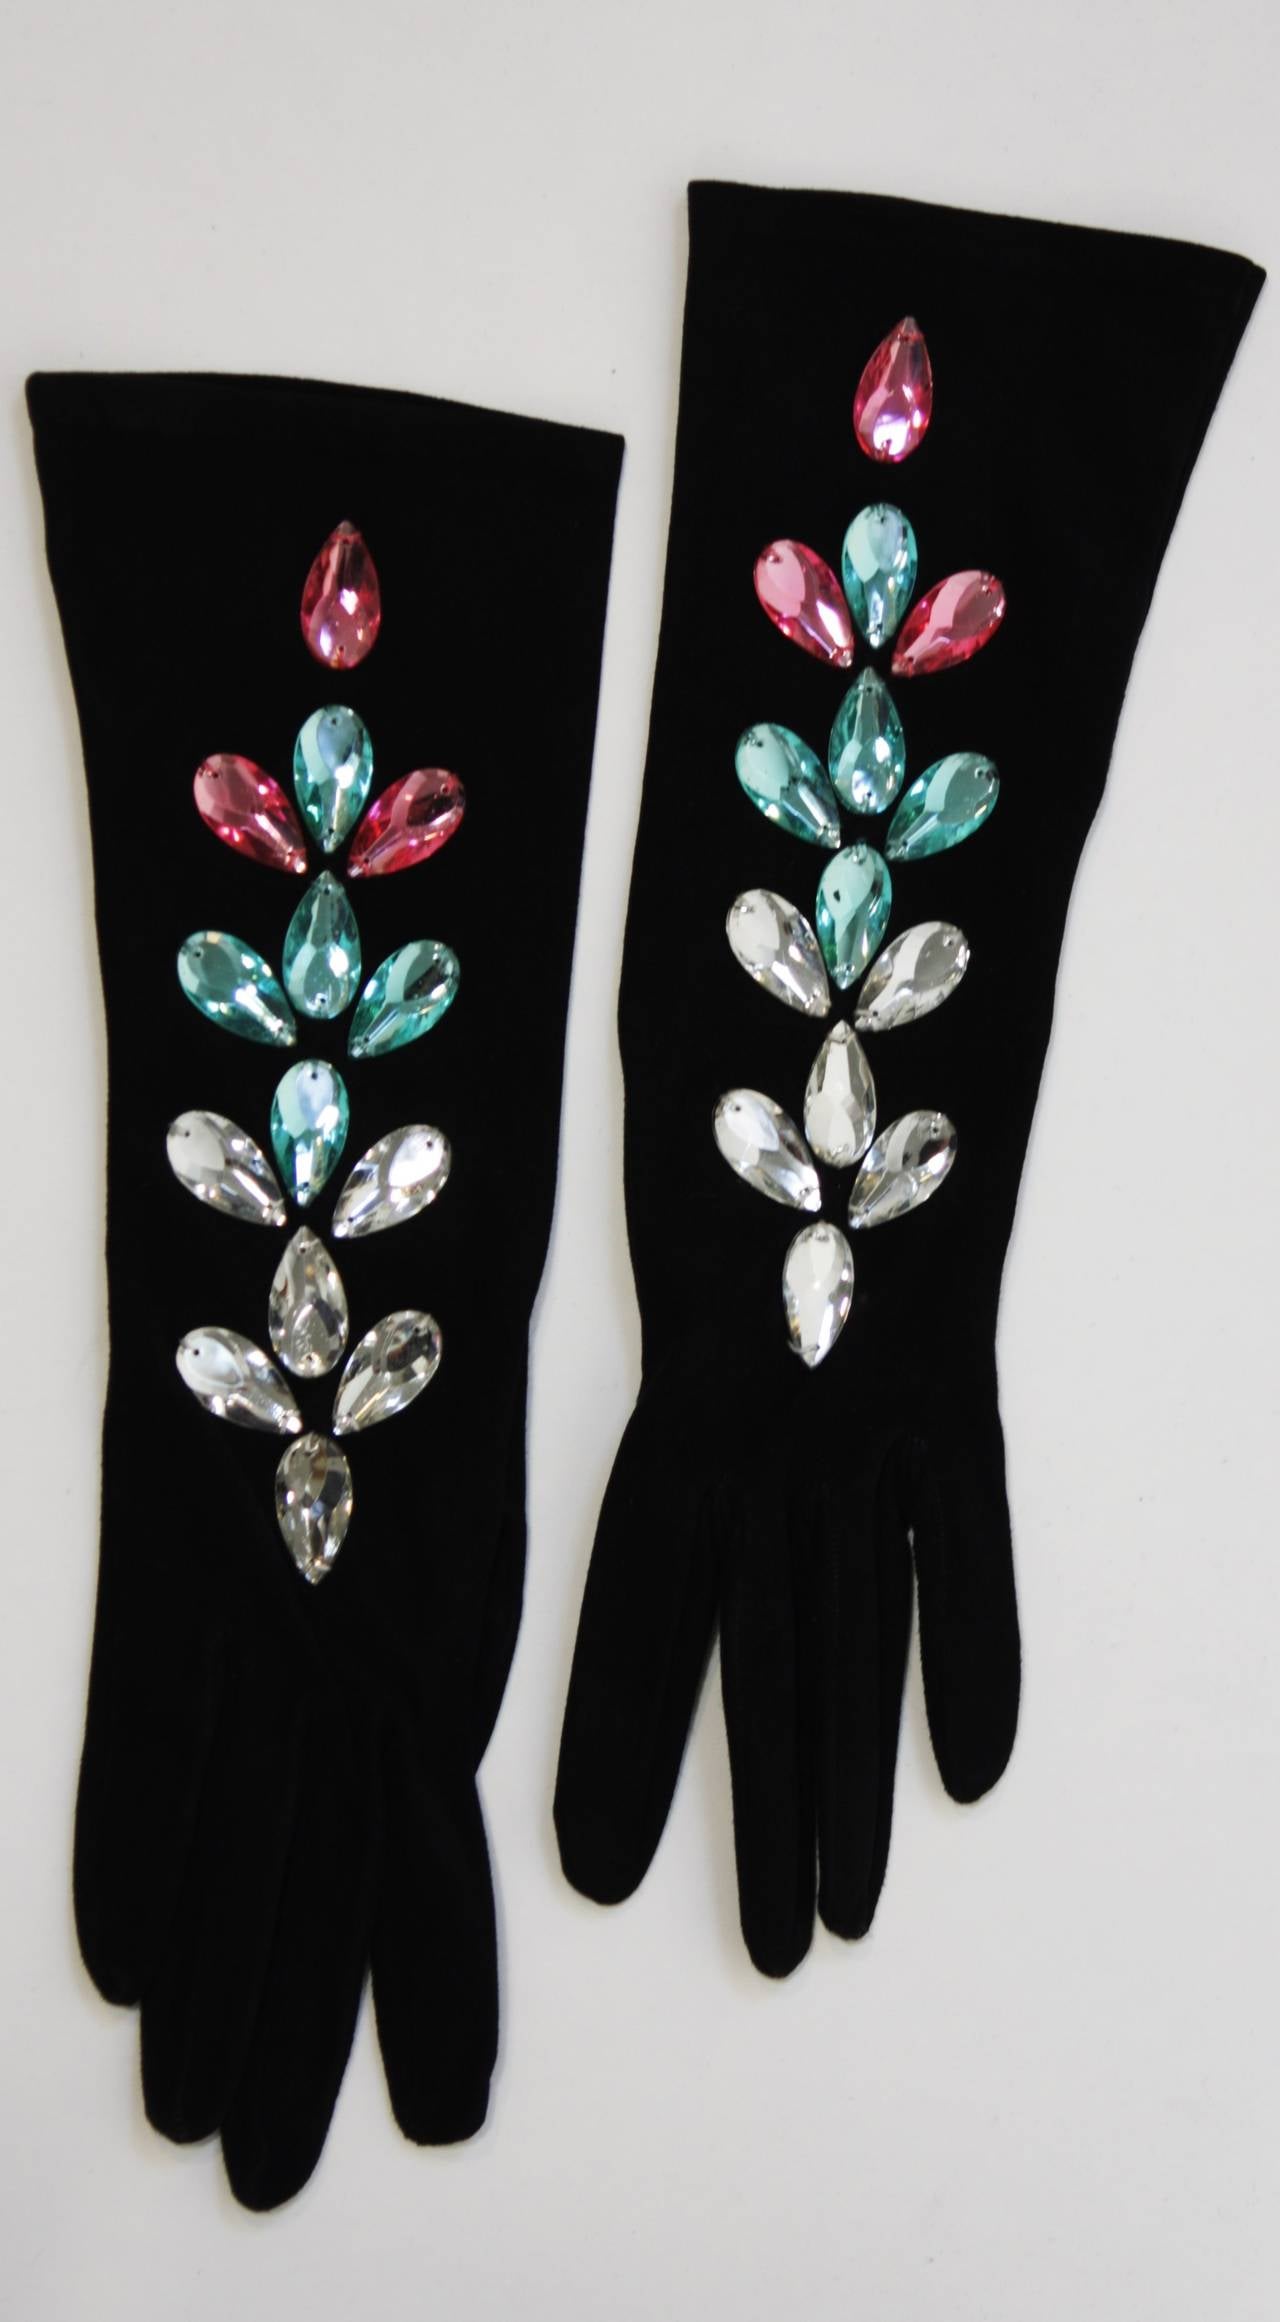 Black Yves Saint Laurent Jeweled Kidskin Suede Gloves Size 6.5